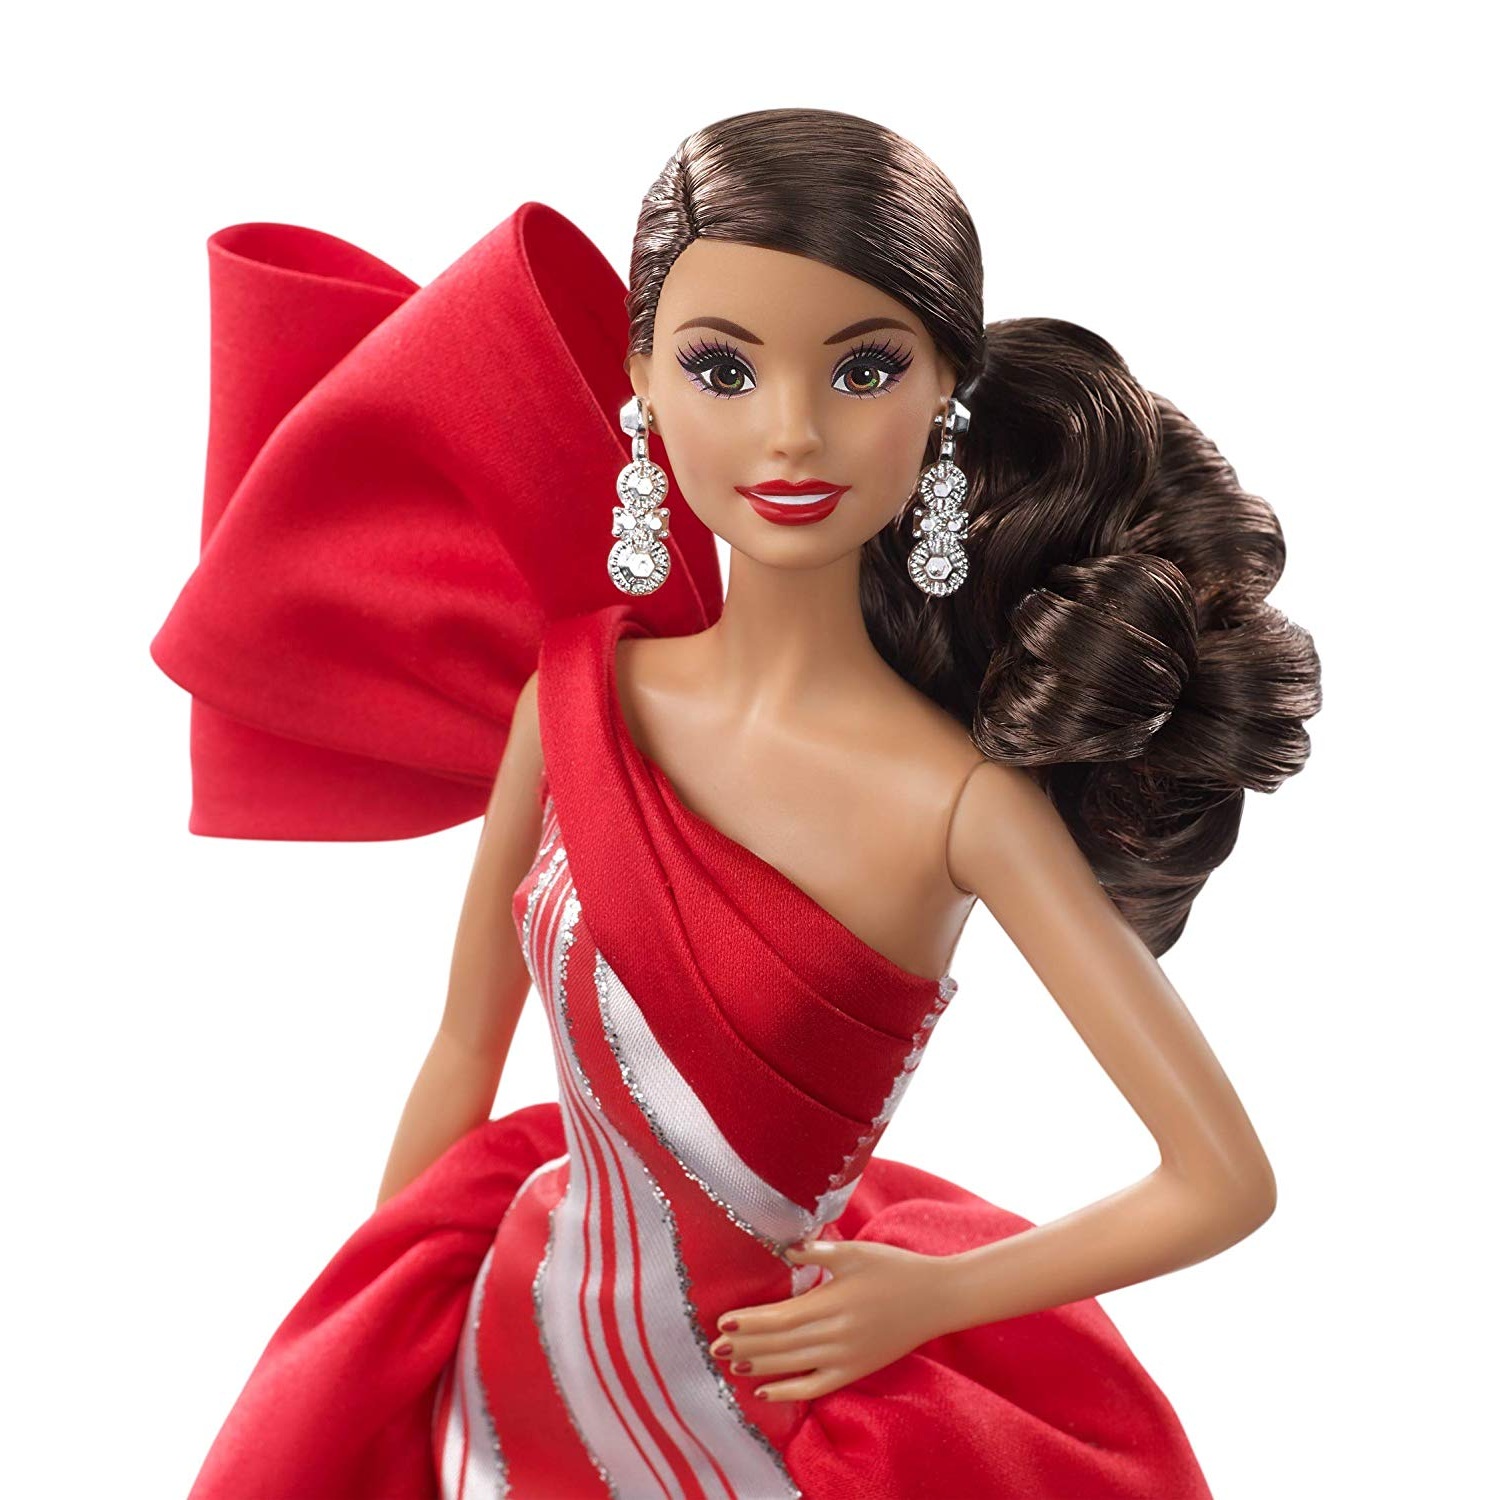 Кукла Барби Холидей Праздник 2019 брюнетка Mattel 2019 Holiday 